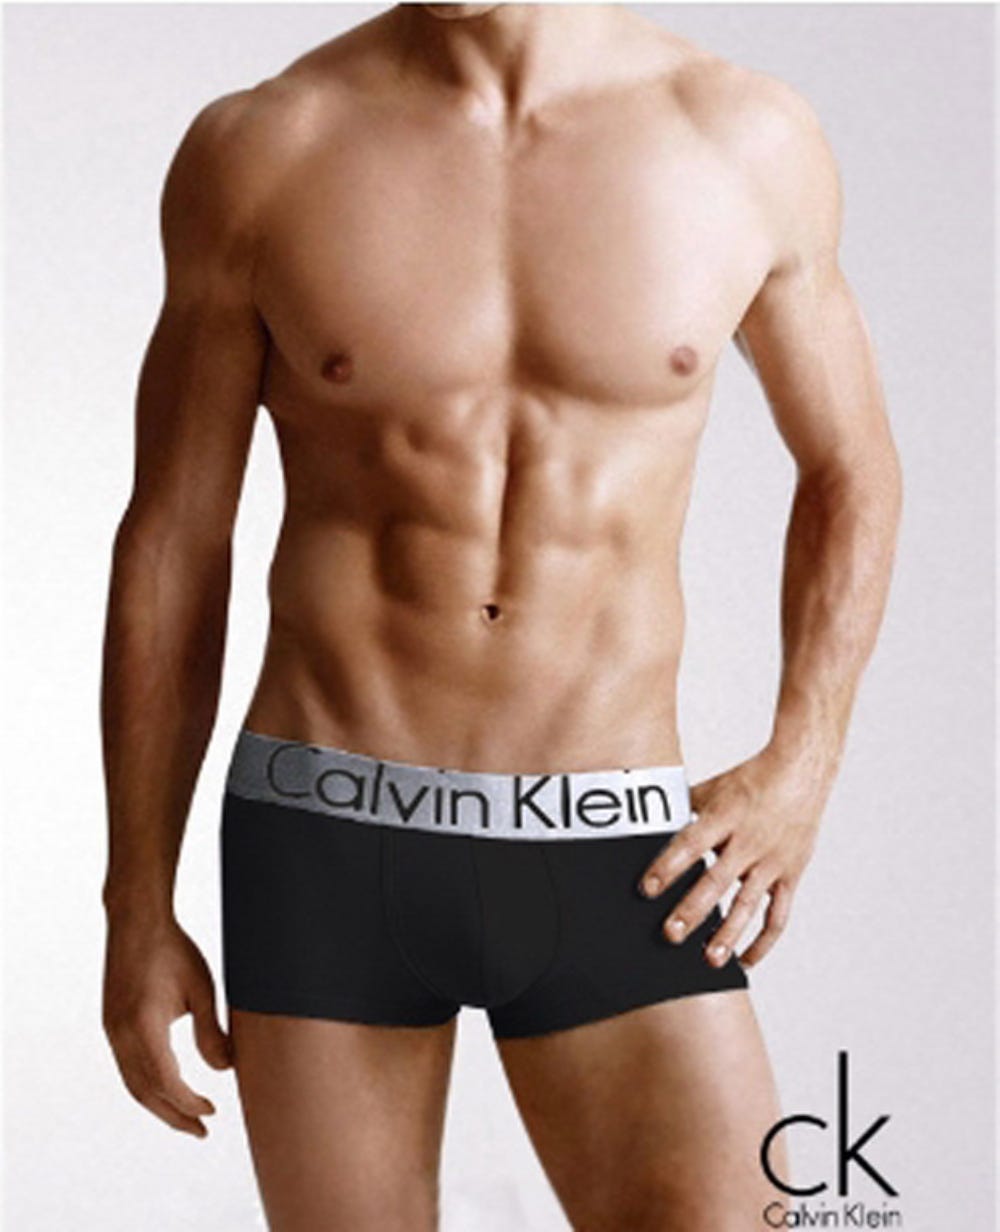 Sportswear underwear by Calvin Klein | by Marina | Medium